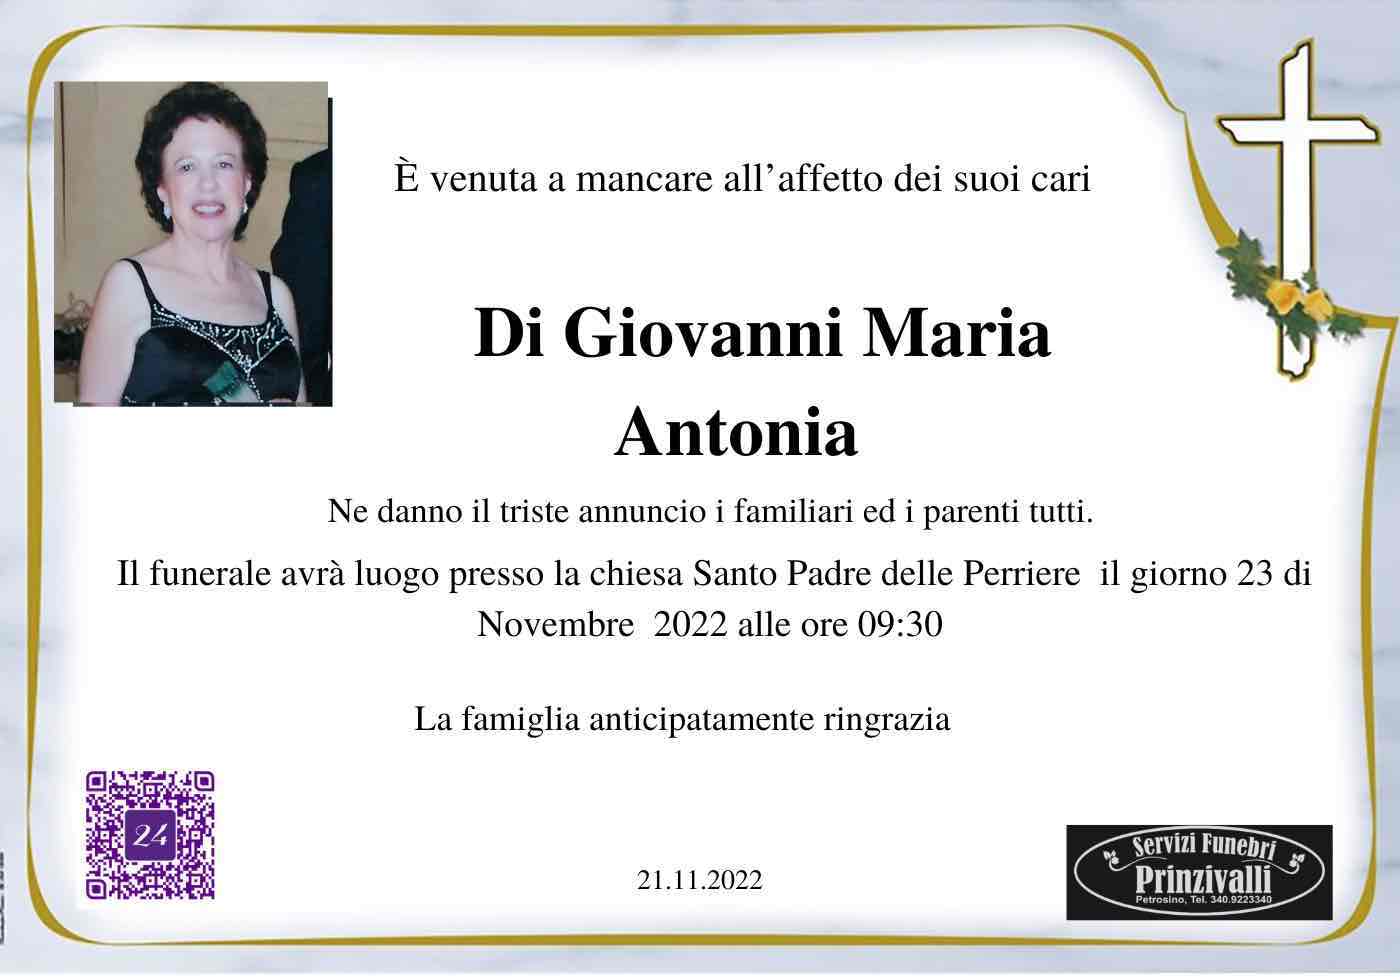 Maria Antonia Di Giovanni